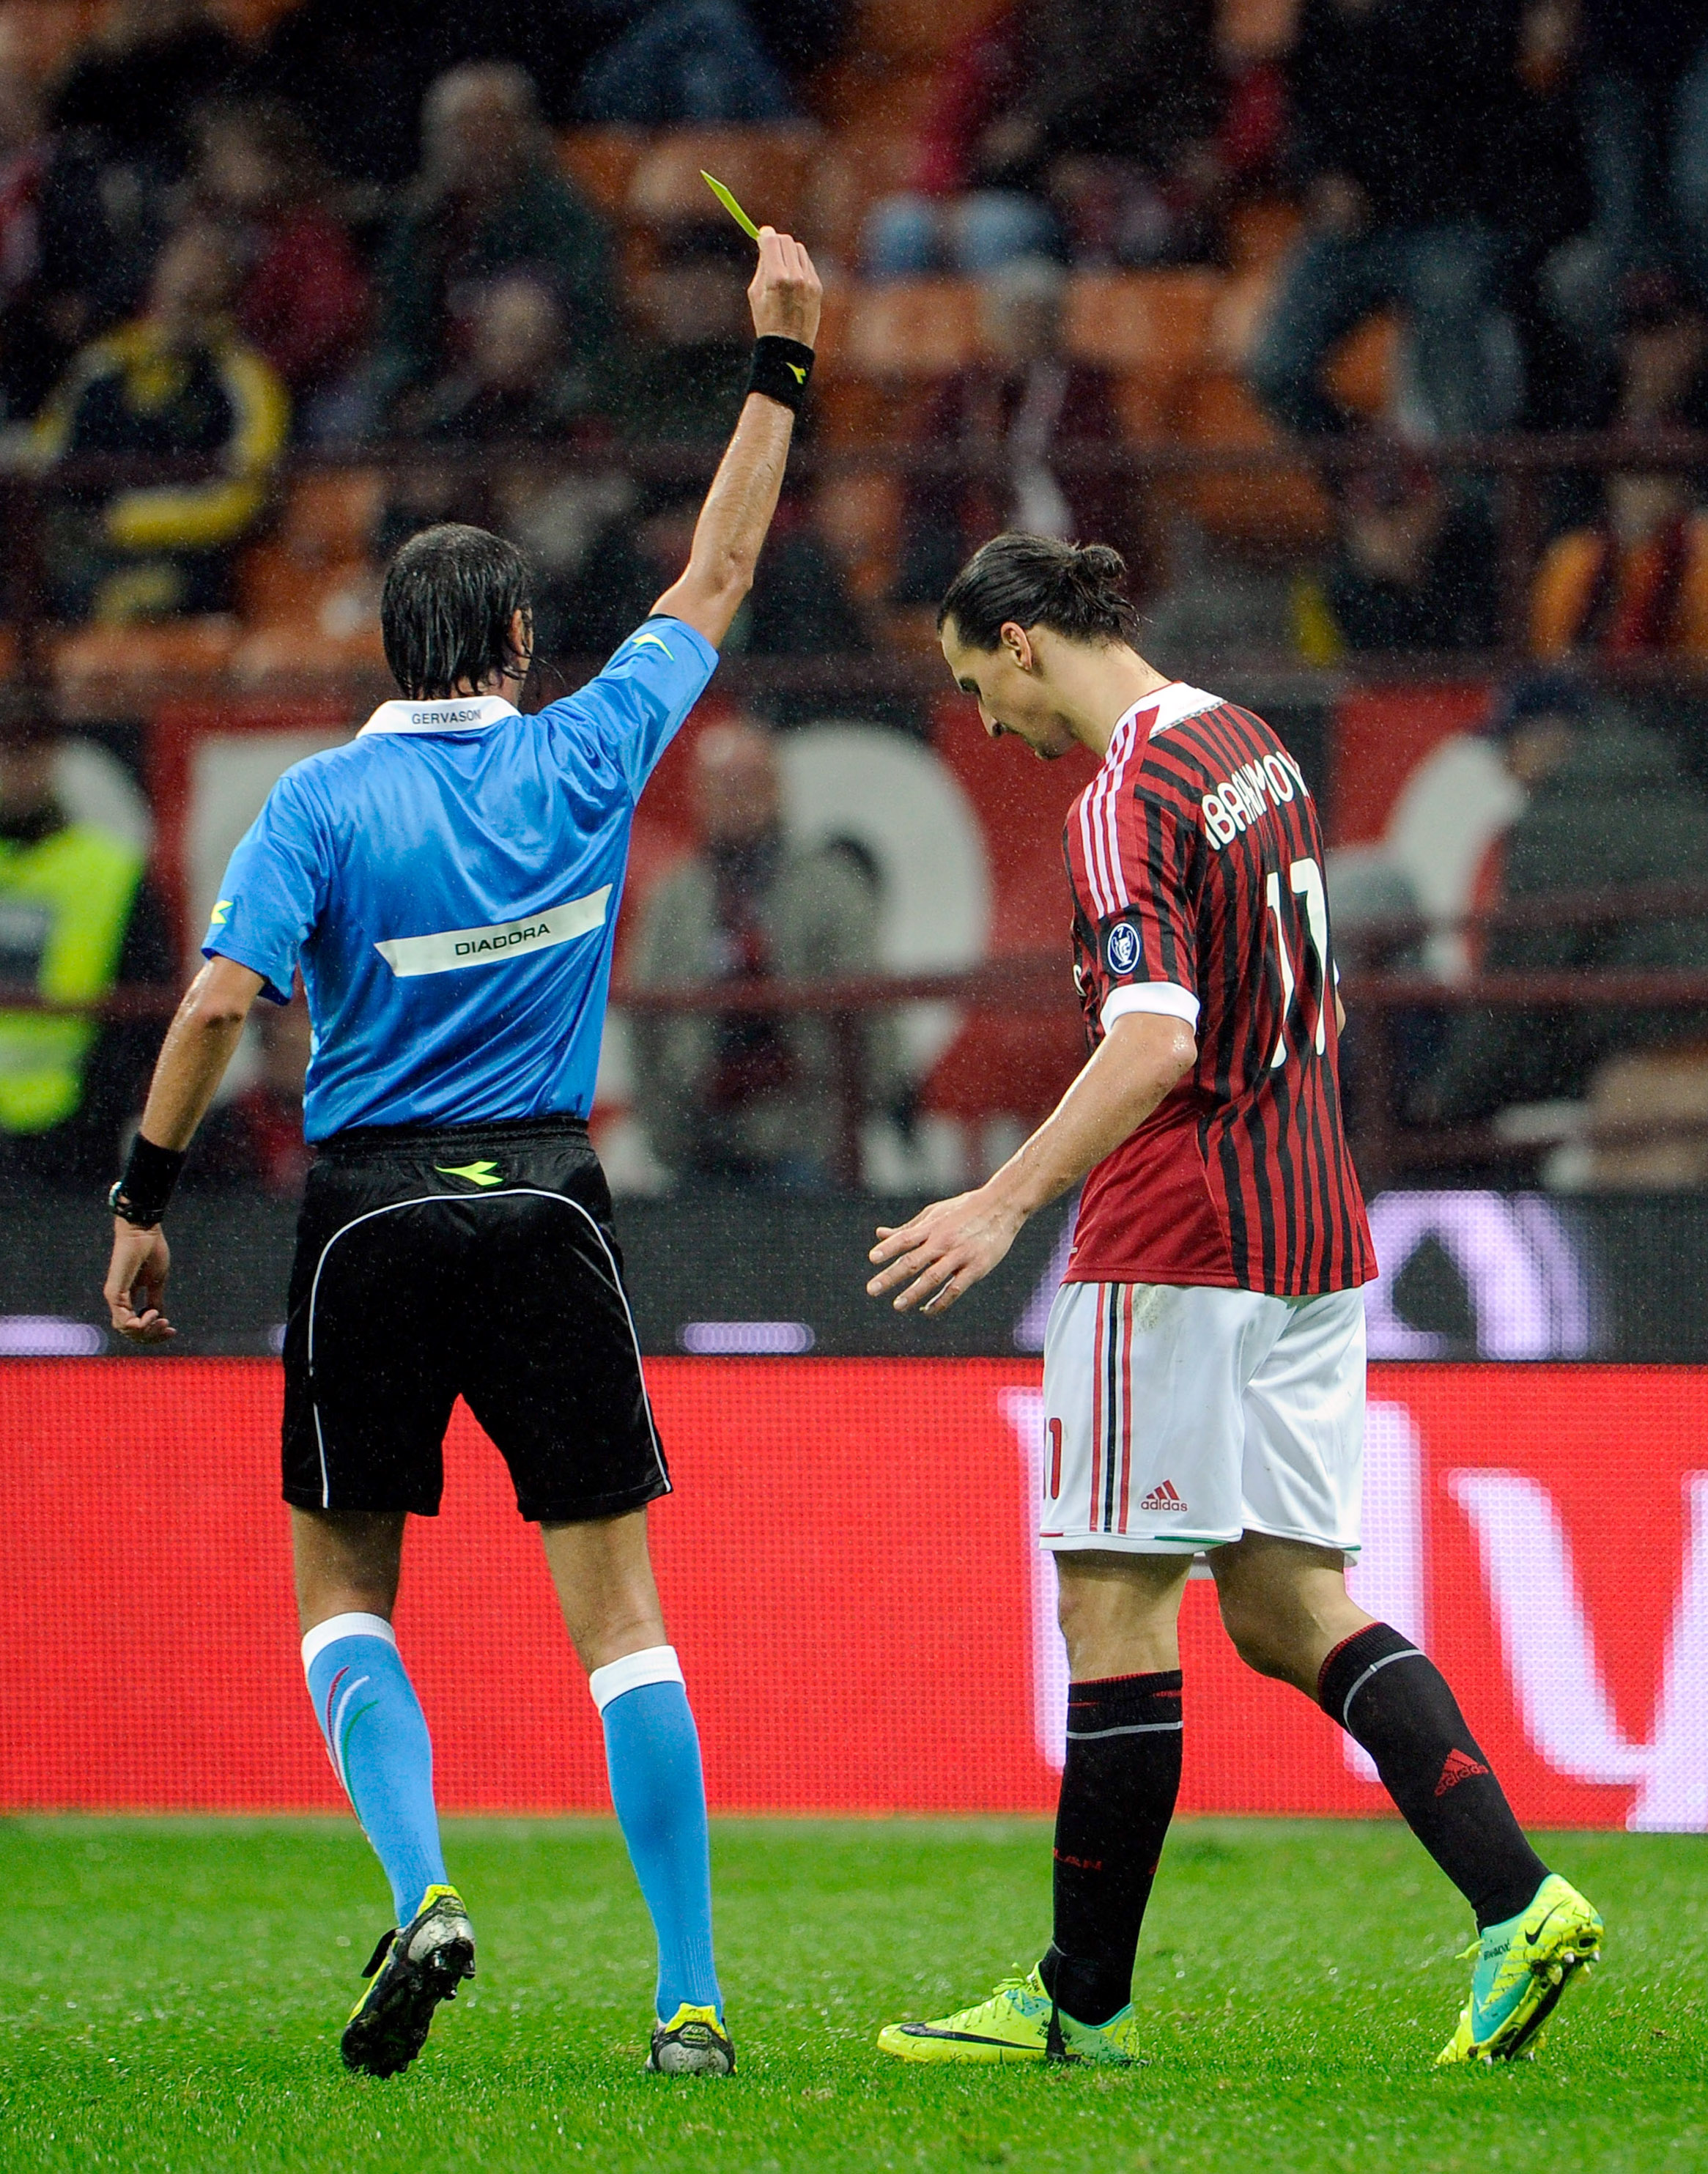 I matchen hemma mot Catania hann Zlatan vara på plan i sju minuter innan han gjorde mål. Matchen vann Milan med 4-0. I slutminuten åkte Zlatan på säsongens första gula kort.